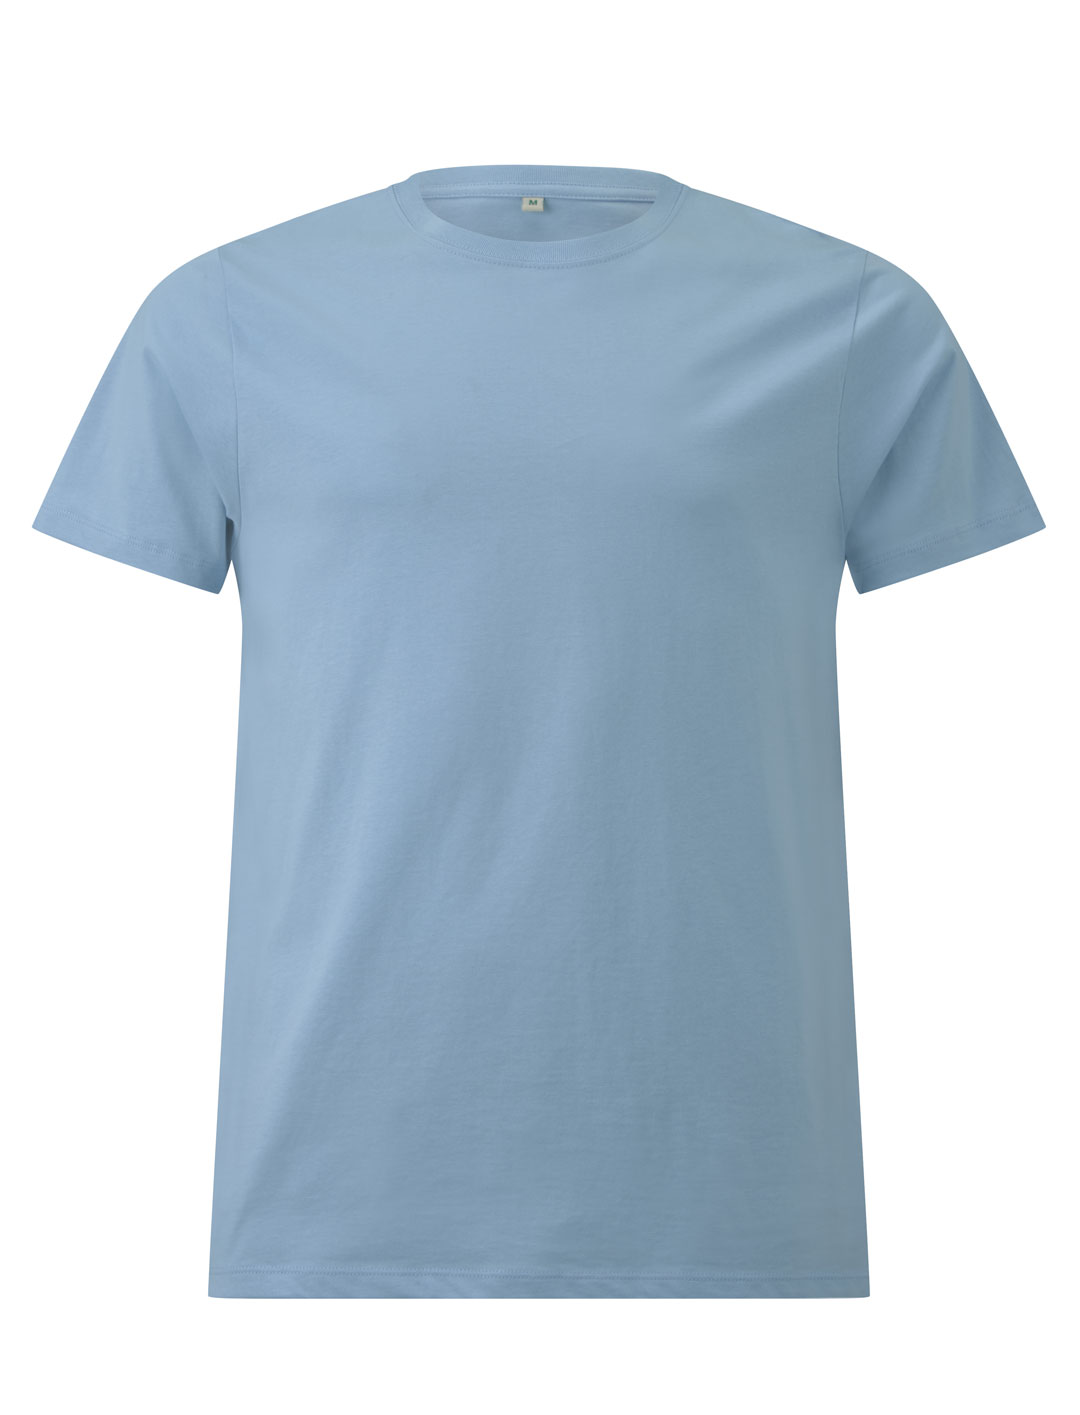 Błękitny ekologiczny t-shirt unisex z własnym nadrukiem firmowym Continental Jersey t-shirt EP18